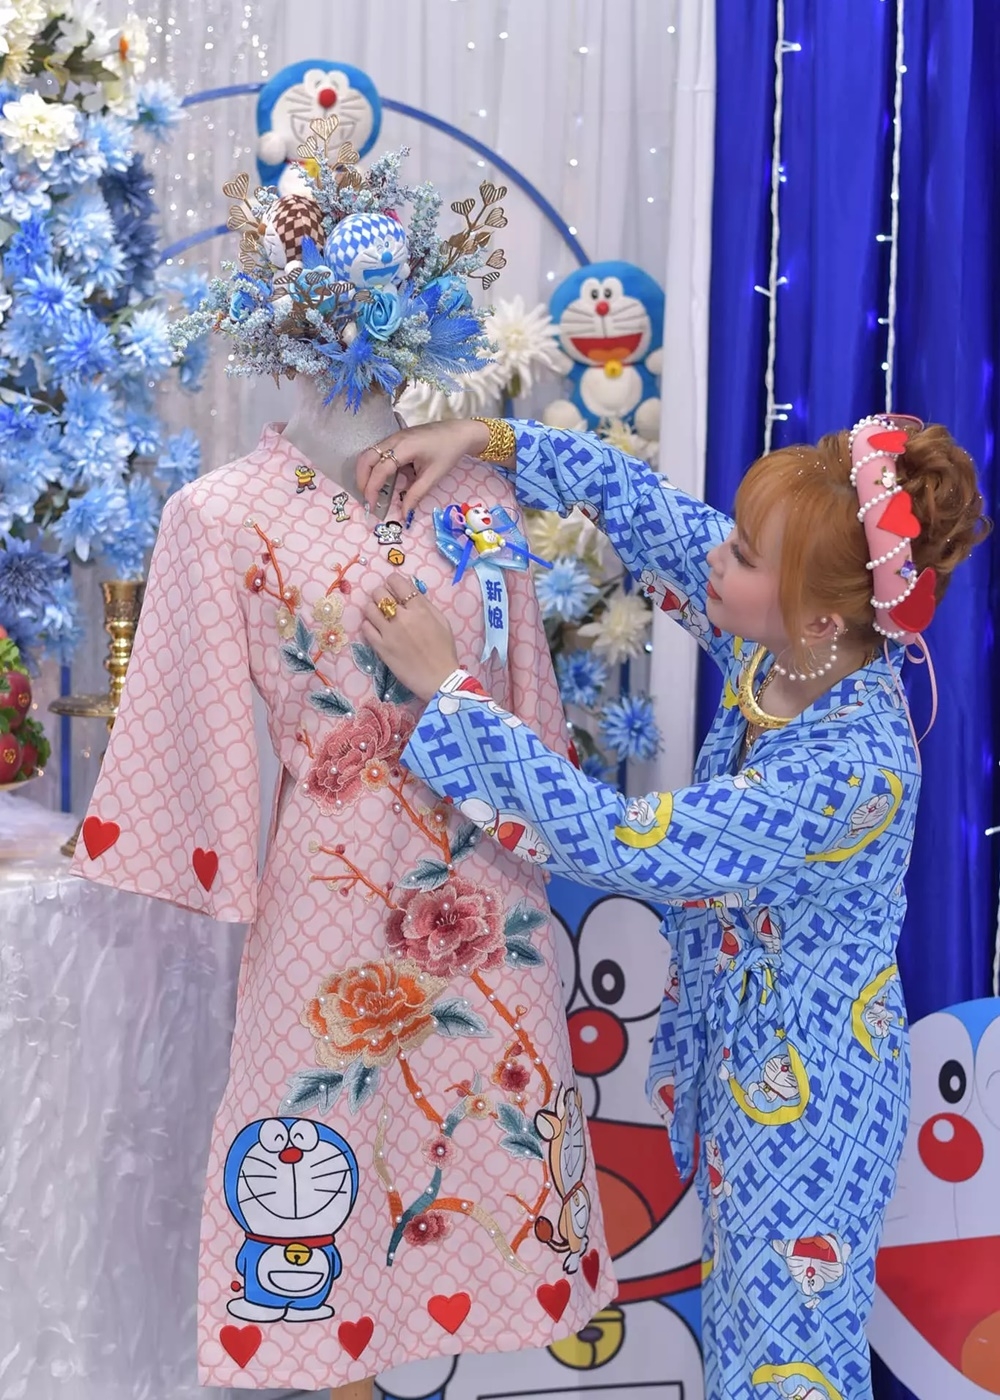 Cô dâu - chú rể Bạc Liêu mang tuổi thơ vào đám cưới ngập tràn Doraemon